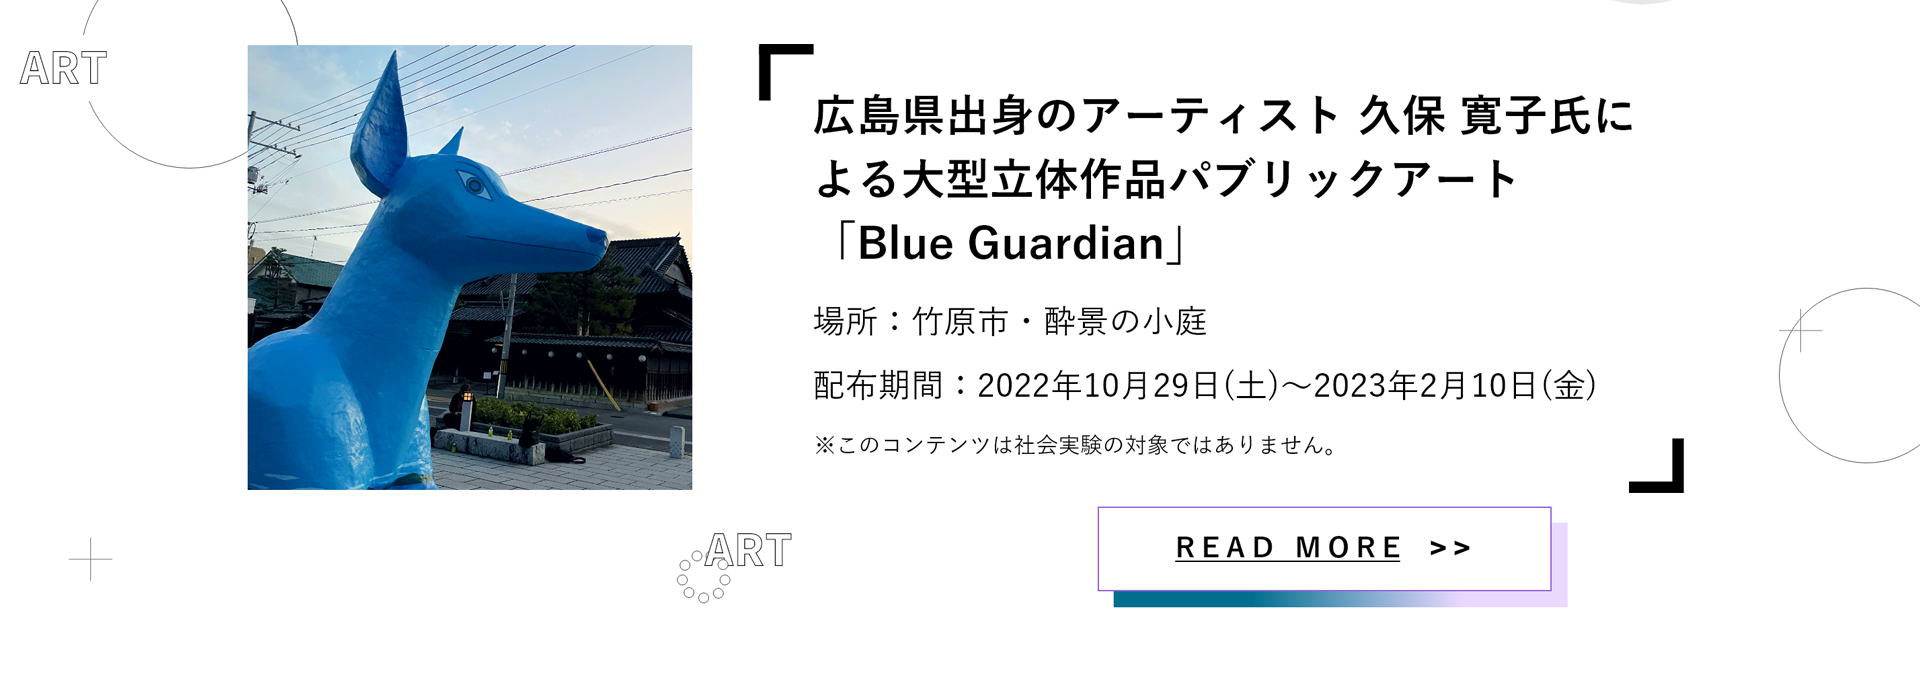 広島県出身のアーティスト 久保 寛子氏による大型立体作品パブリックアート「Blue Guardian」